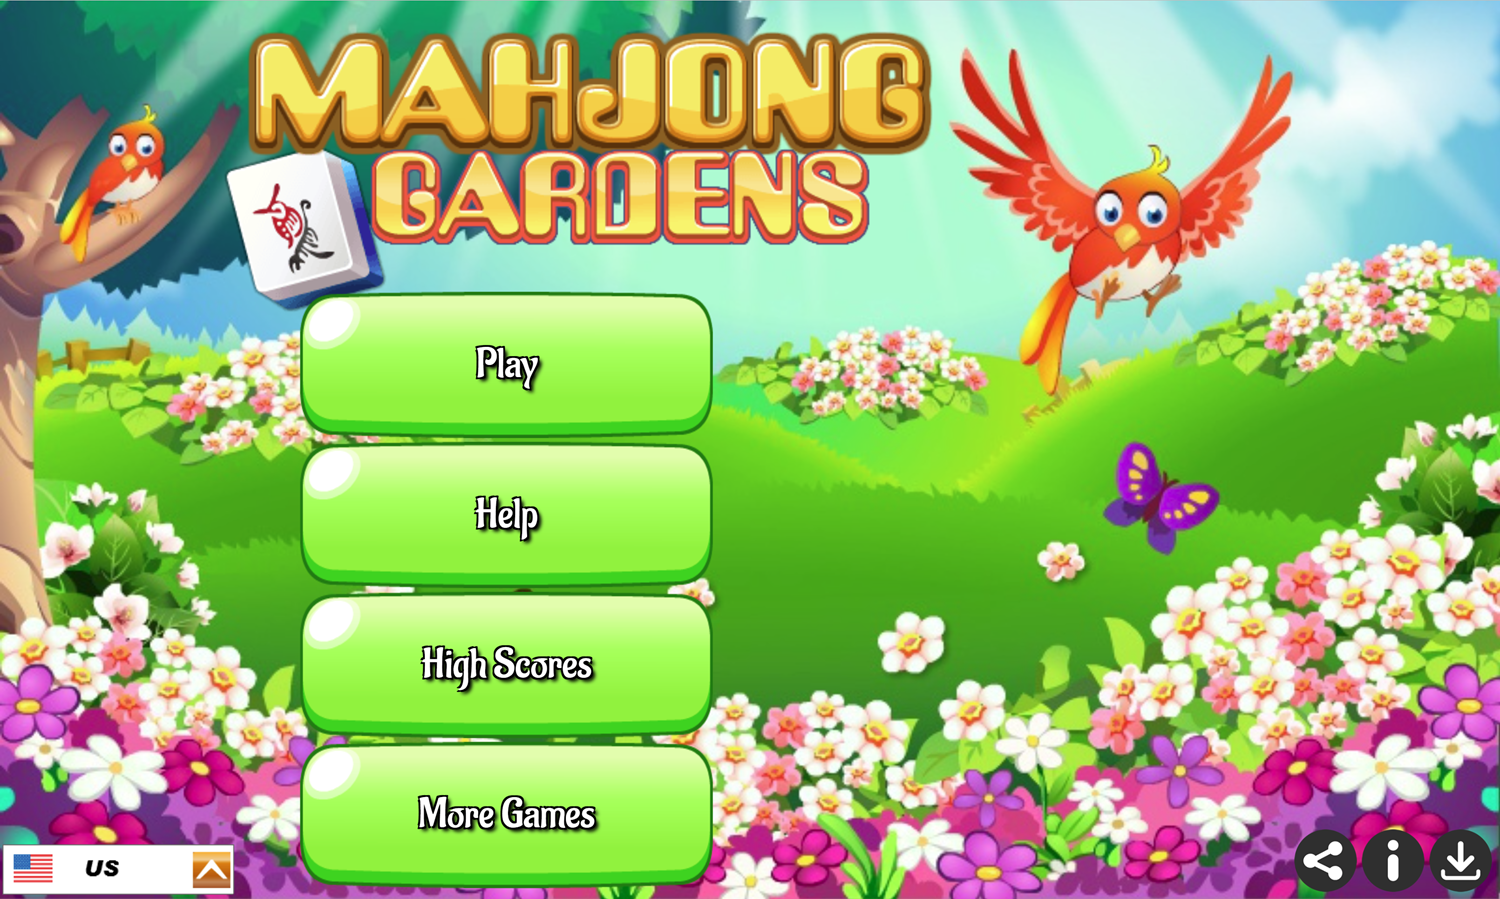 Mahjong Gardens Game Welcome Screen Screenshot.